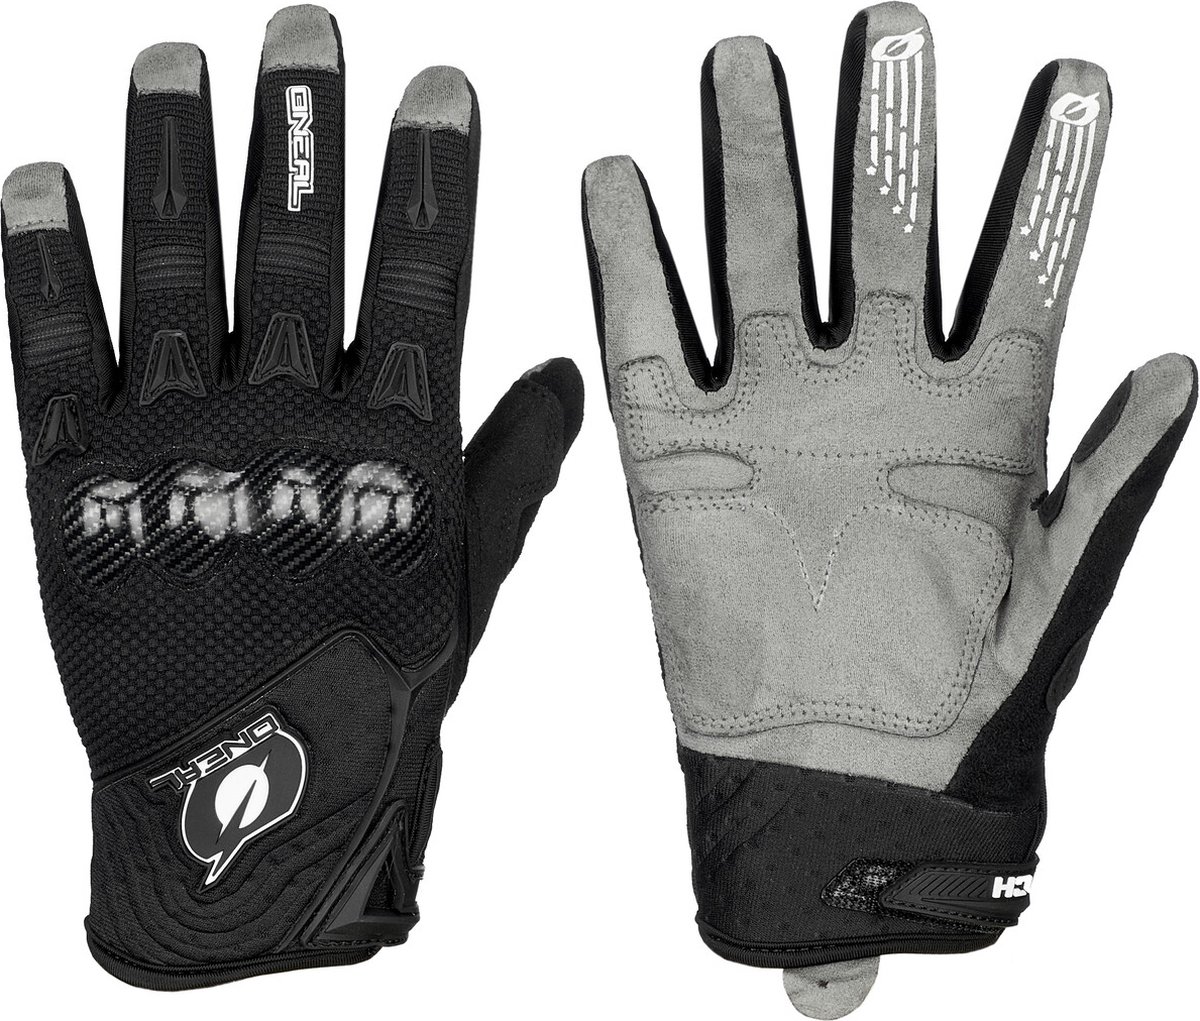 O'Neal Butch Carbon Handschoenen, zwart/grijs Handschoenmaat M